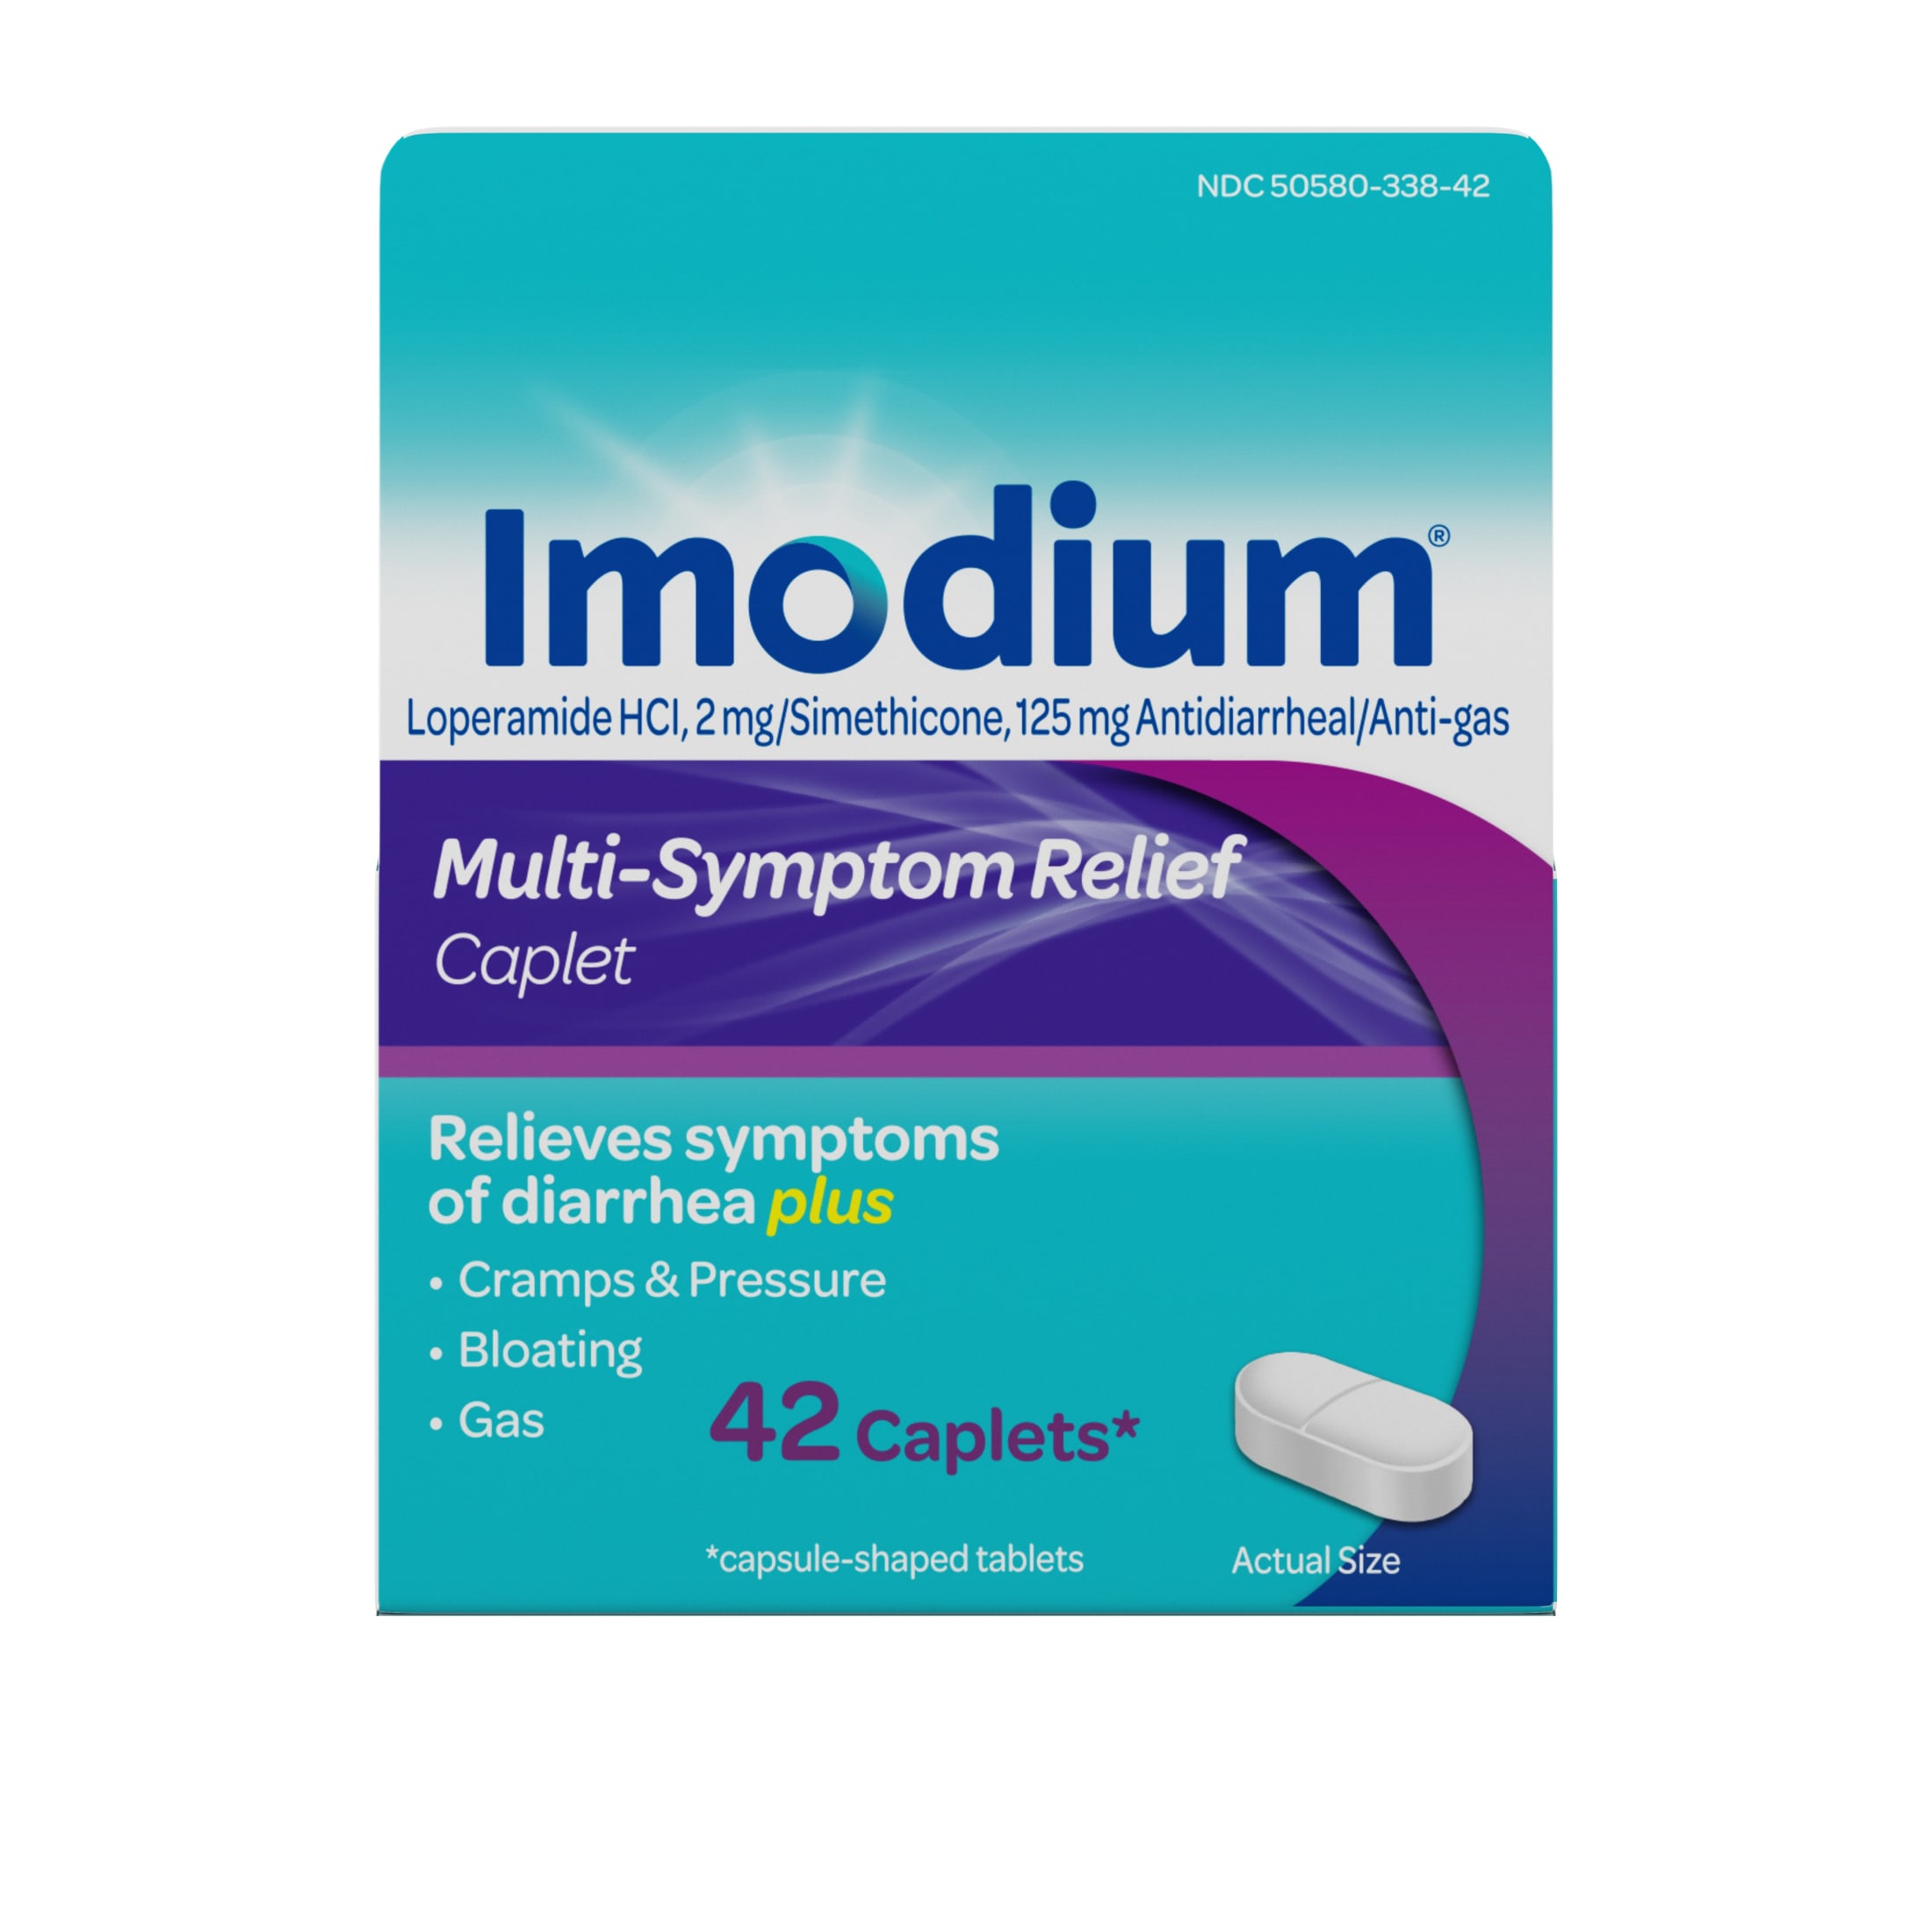 Imodium Multi-Symptom Relief Anti-Diarrheal Medicine Caplets, 42 ct. - image 1 of 11